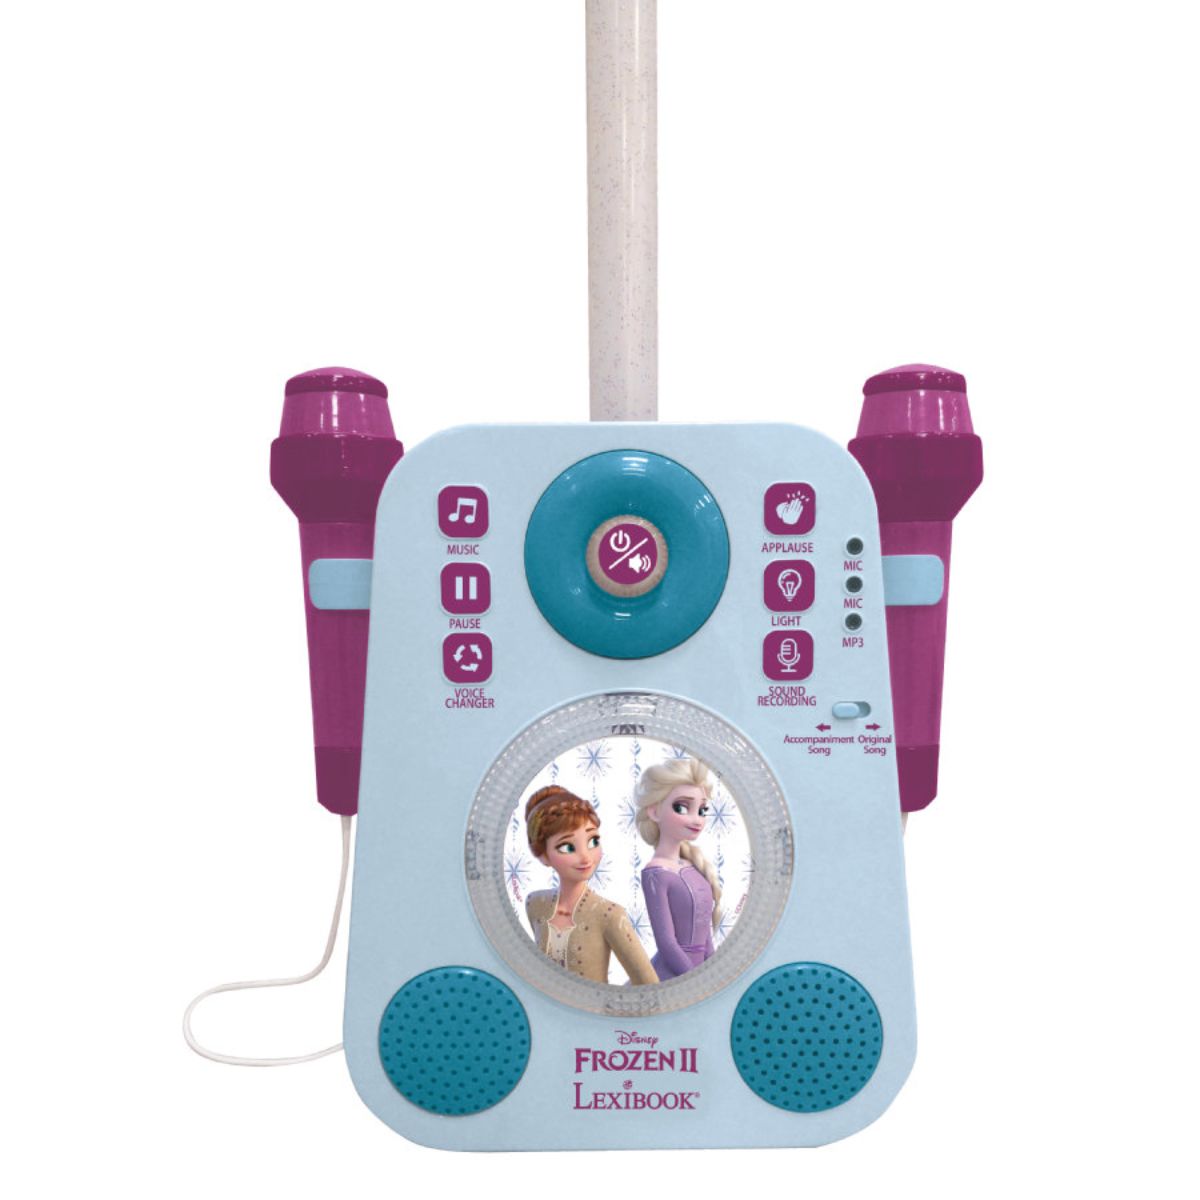 Set Karaoke portabil, Lexibook, cu 2 microfoane, sunete si lumini, Disney Frozen 2 Lexibook